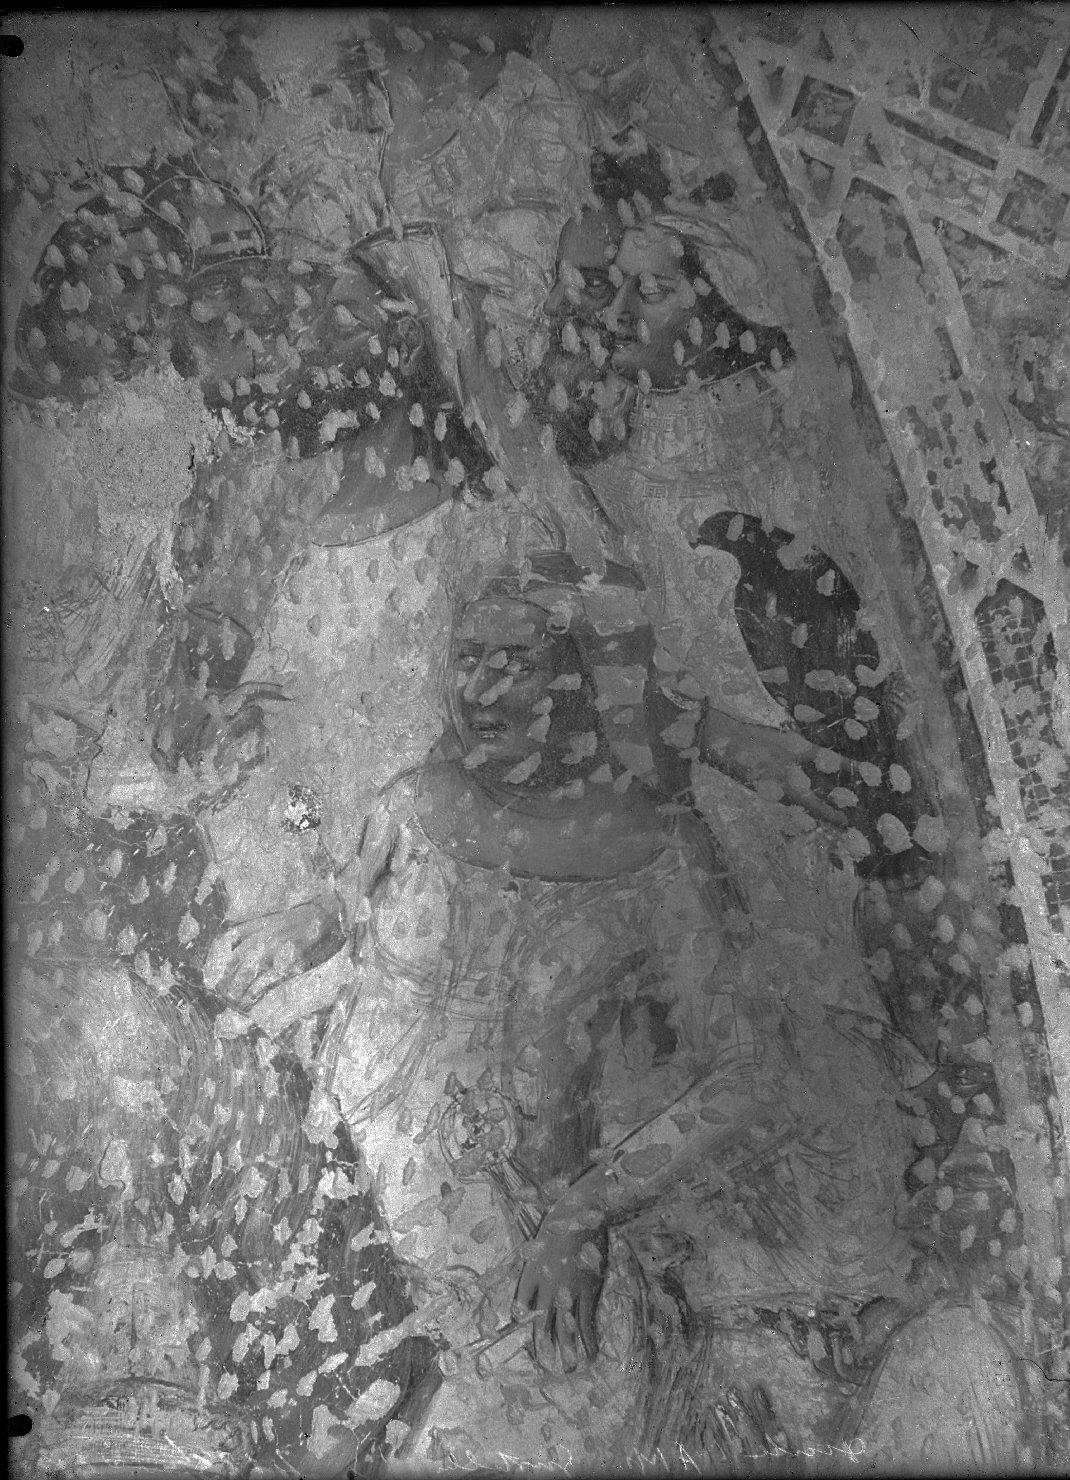 Mantova - Pitture murali (negativo) di Maestro di Mombaroccio o dell'Incoronazione Bellpuig (attr), Anonimo (XX)